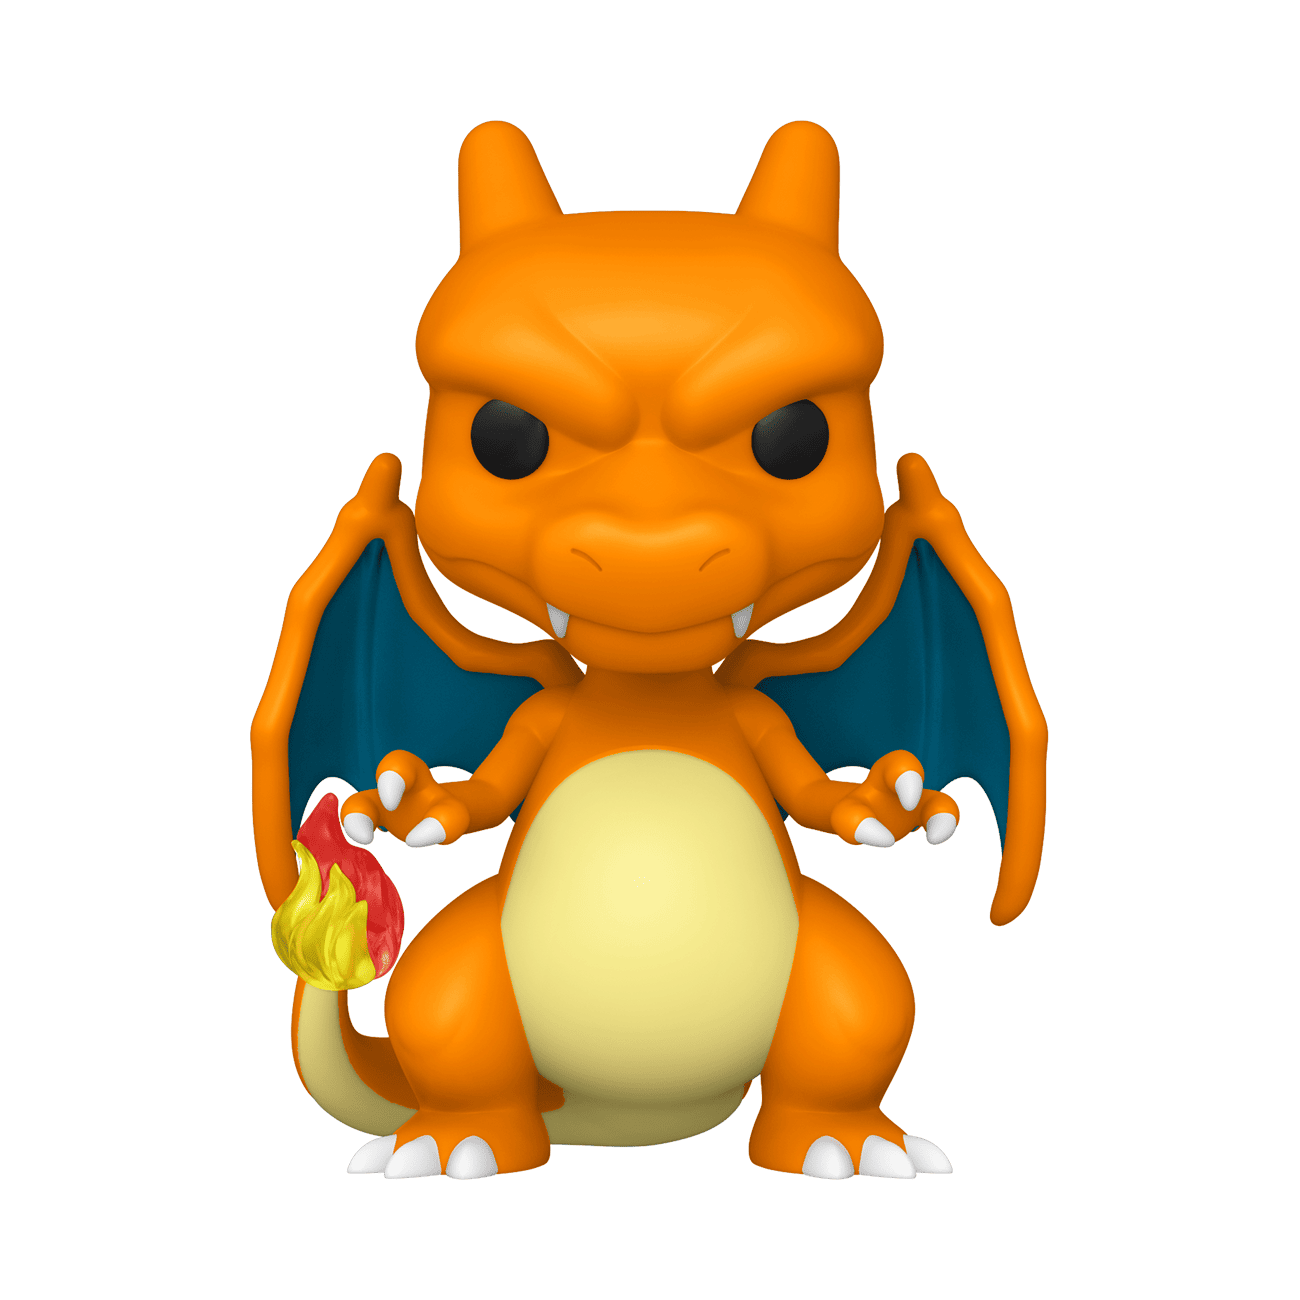 Funko Pop Pokemon 843 Charizard, Hobbies & Toys, Toys & Games on Carousell